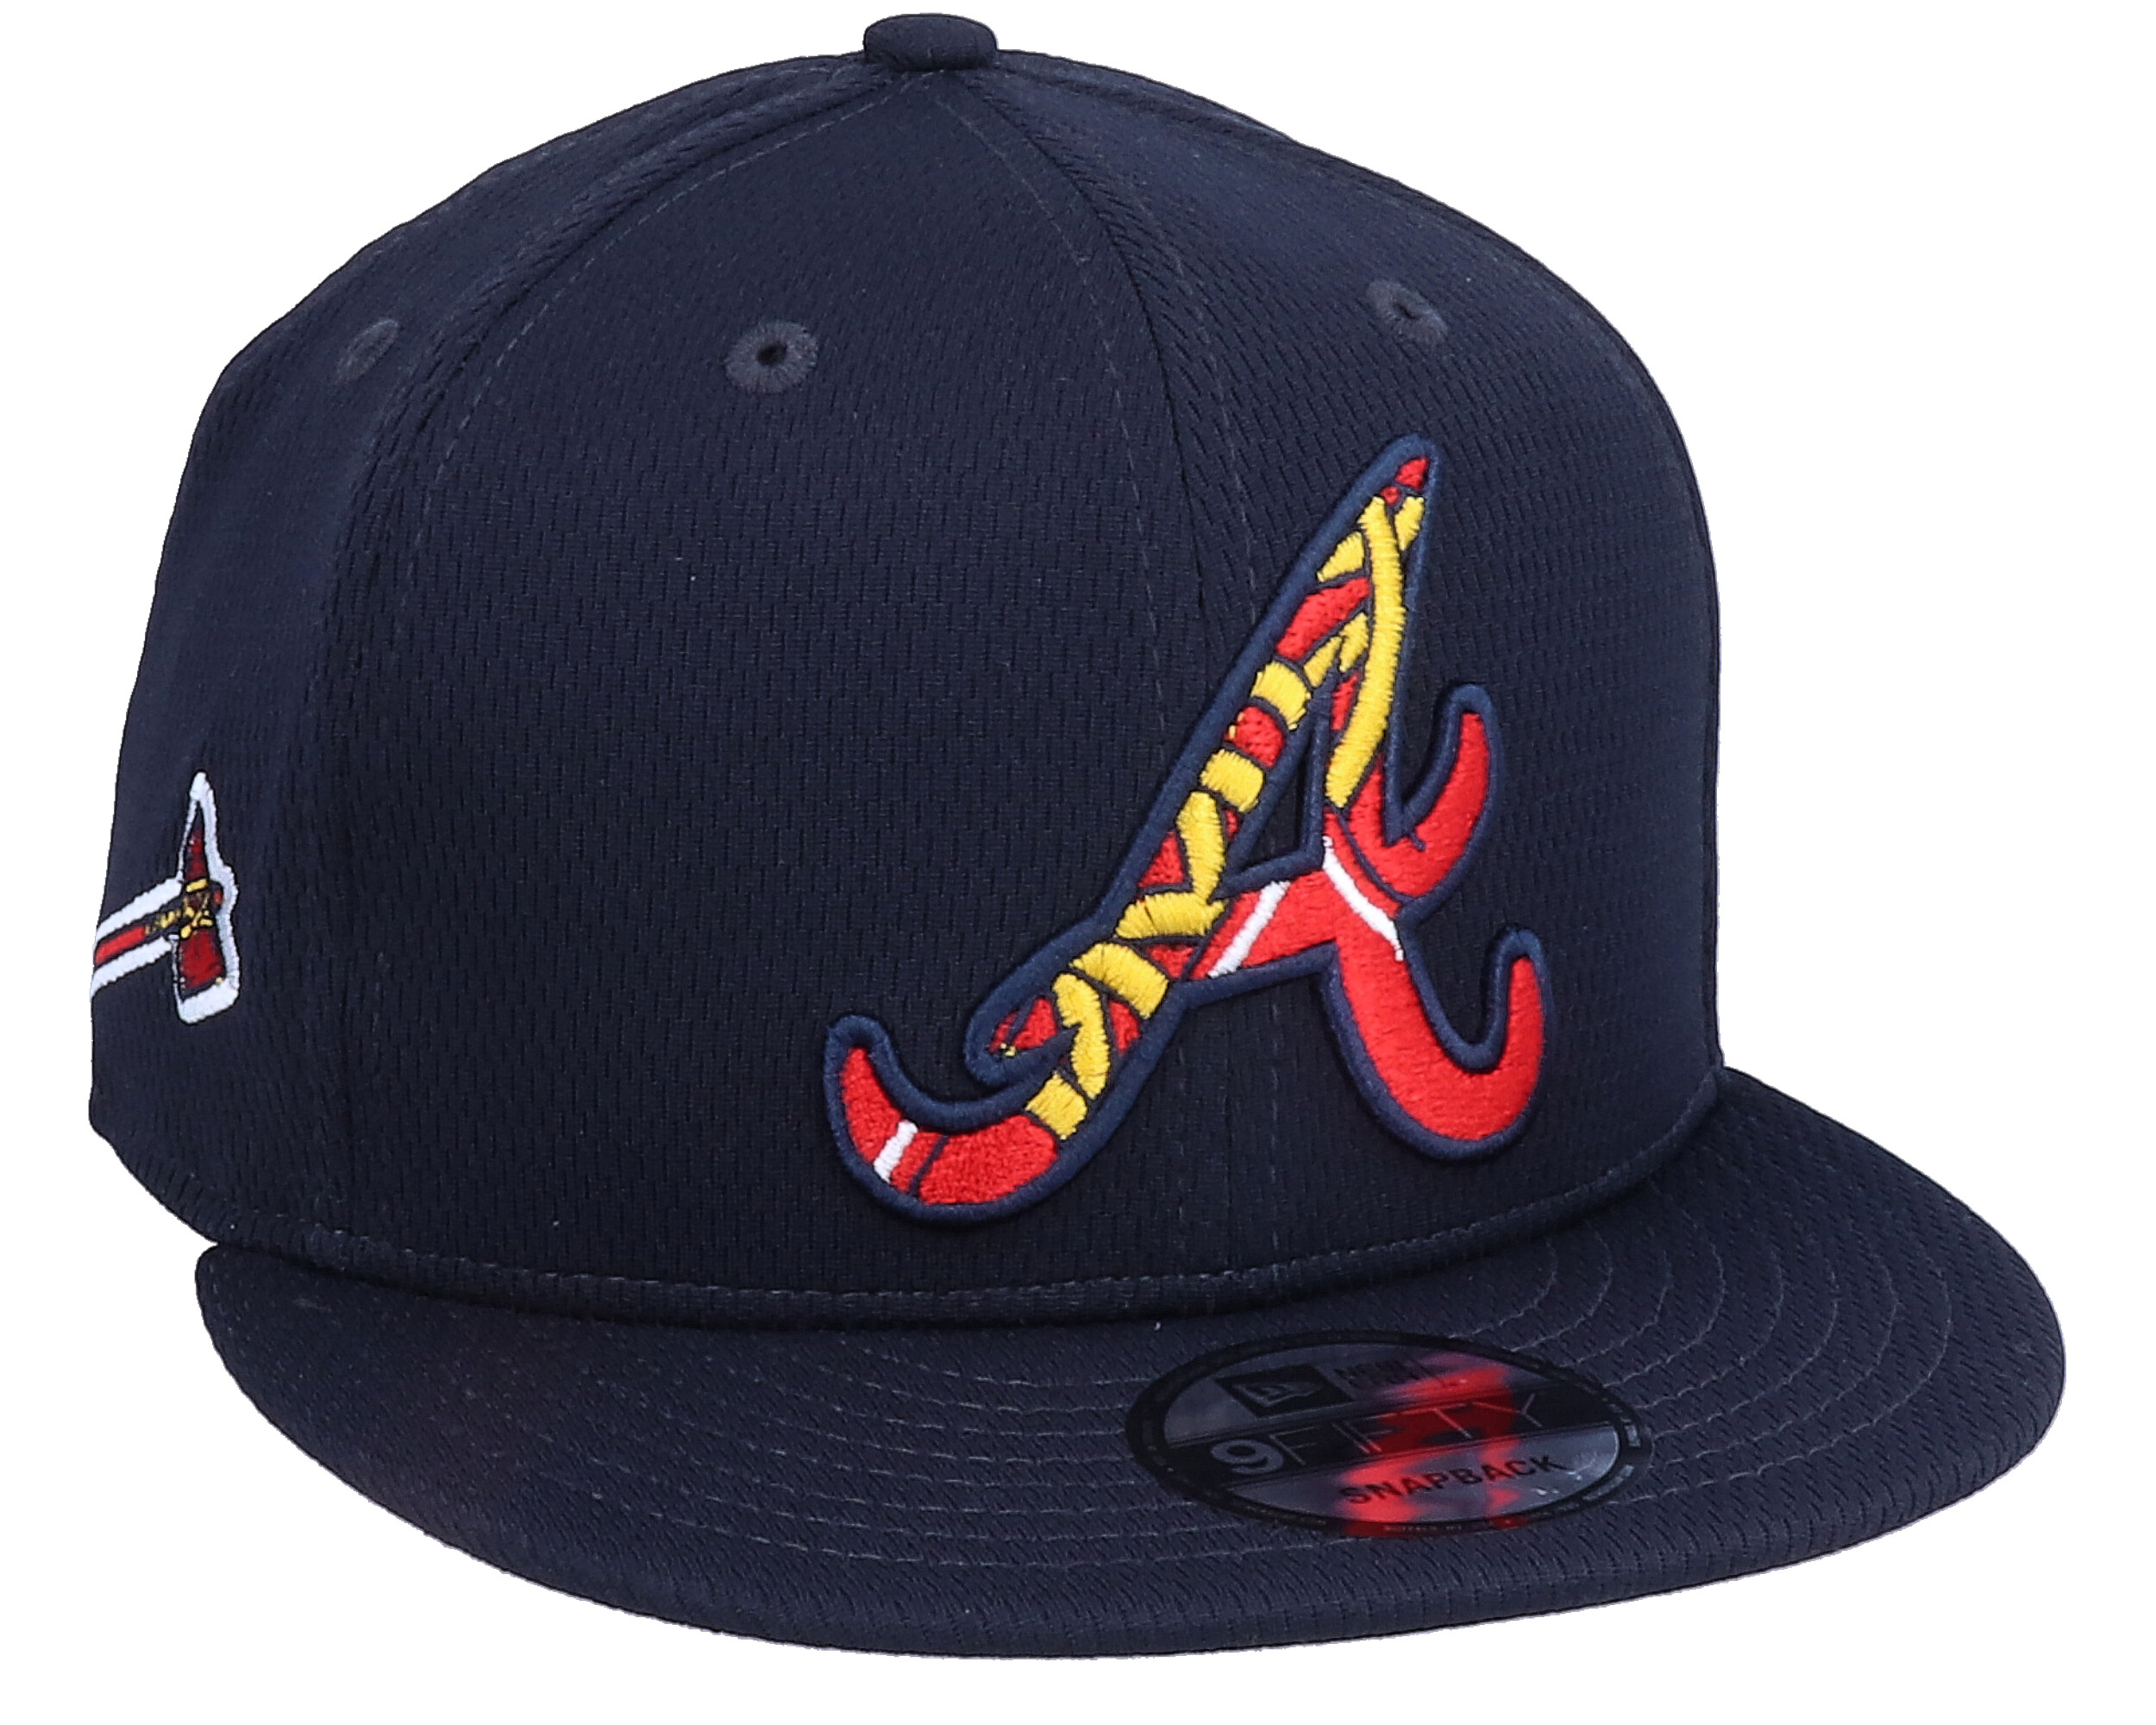 Atlanta Braves MLB 9Fifty Batting Practise Navy Snapback - New Era cap